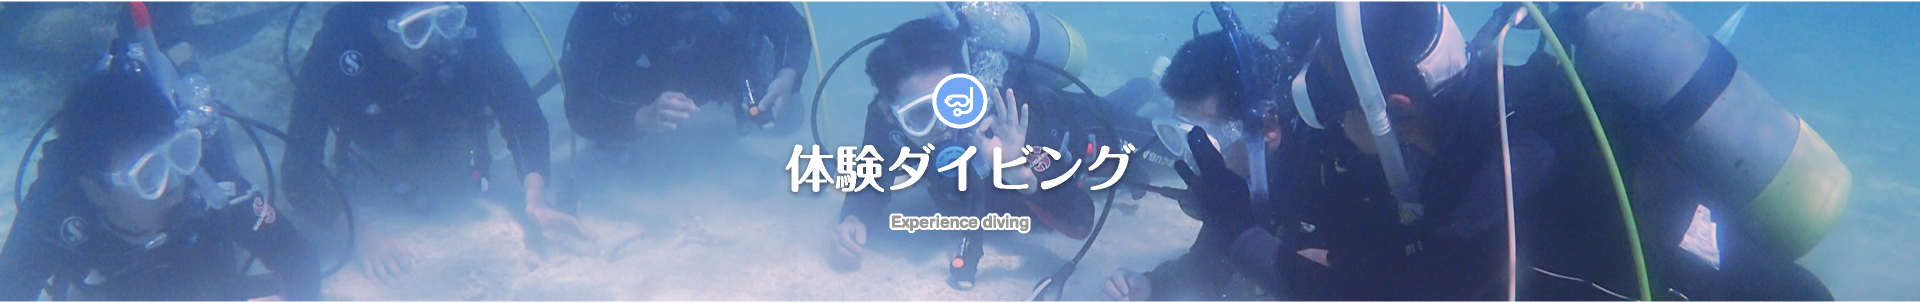 体験ダイビング Experience diving